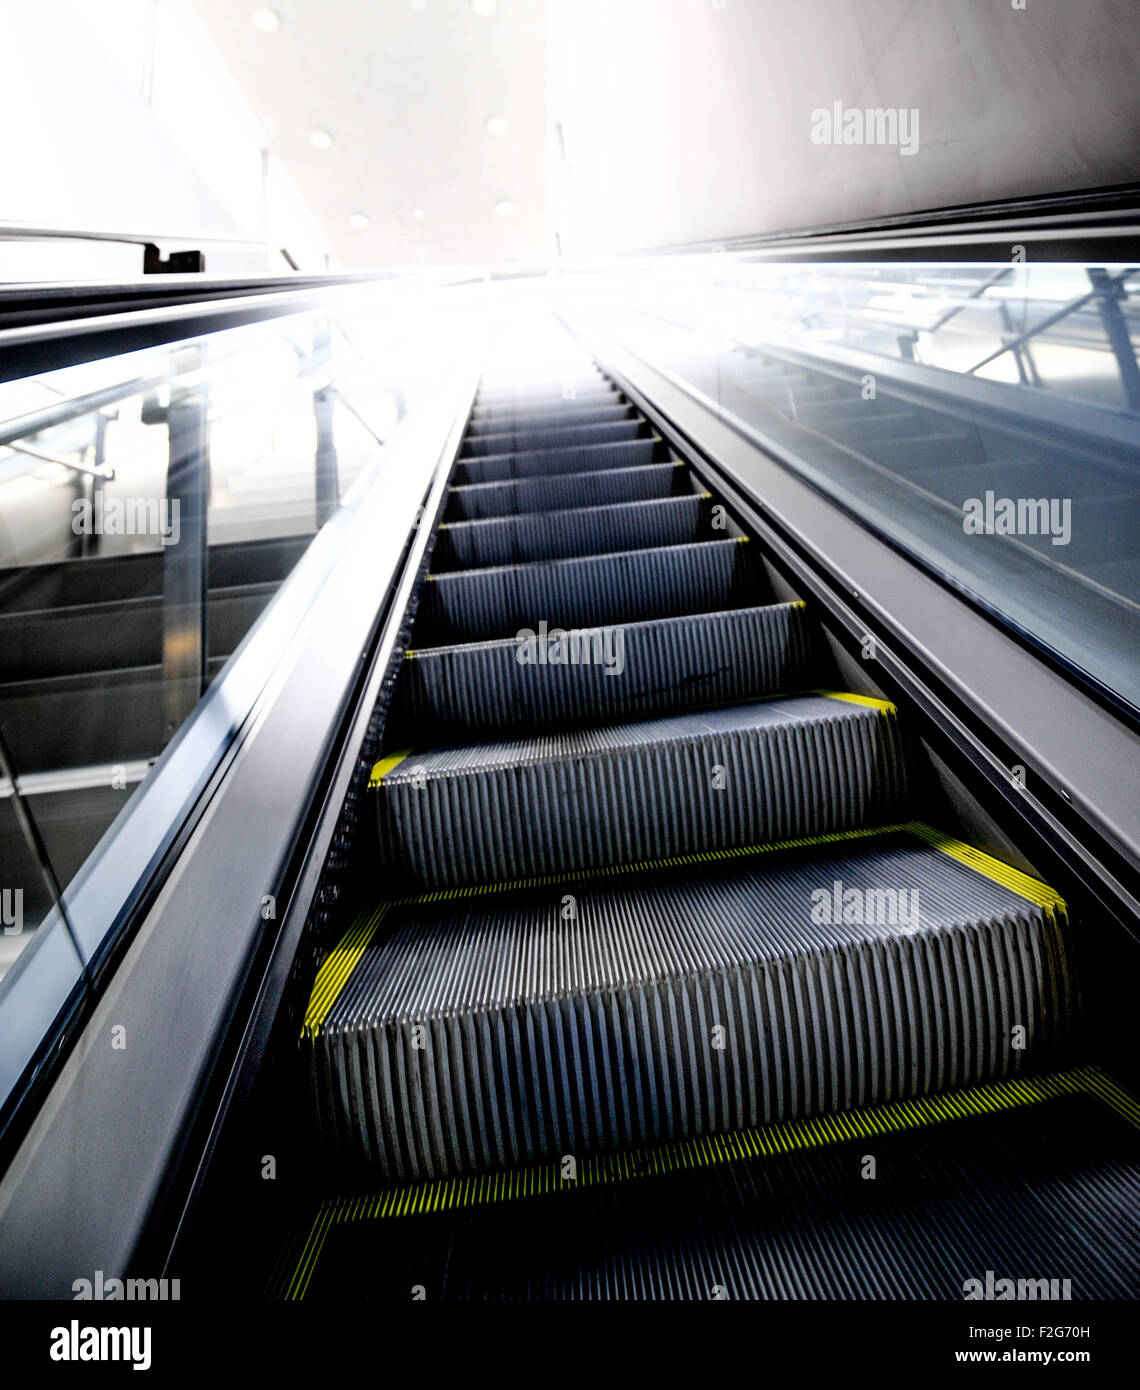 escalator in a metro station in Malaga- escalera mecánica en una estación de metro en Málaga Stock Photo